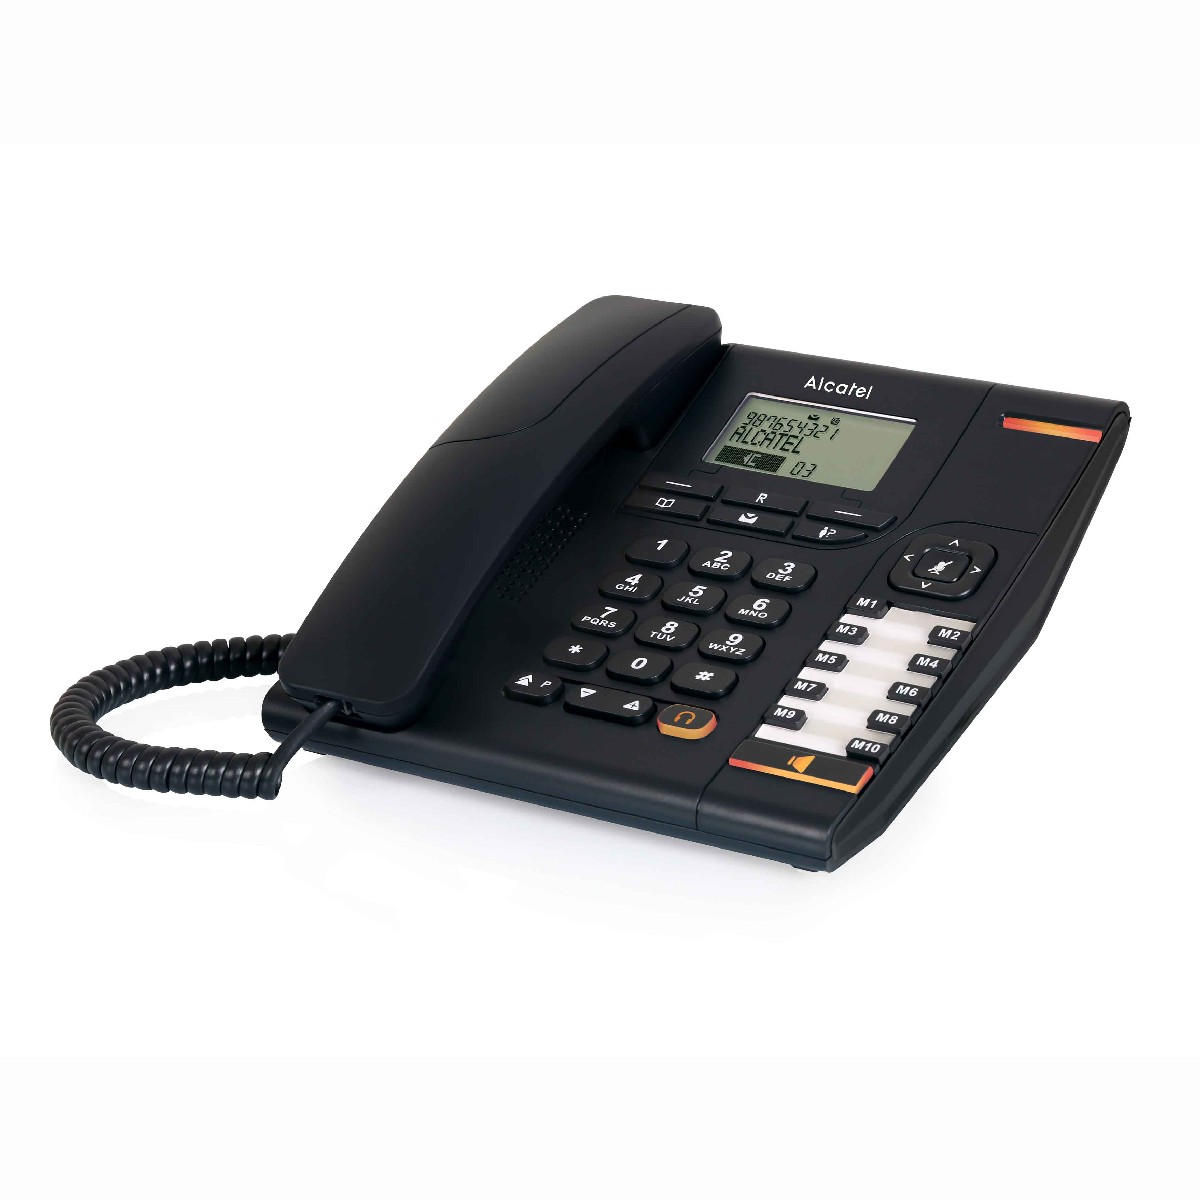 Σταθερό Ψηφιακό Τηλέφωνο Alcatel Temporis 880 Μαύρο, με Μεγάλη  Οθόνη, Ανοιχτή Ακρόαση και Υποδοχή Σύνδεσης Ακουστικού Κεφαλής (RJ9)